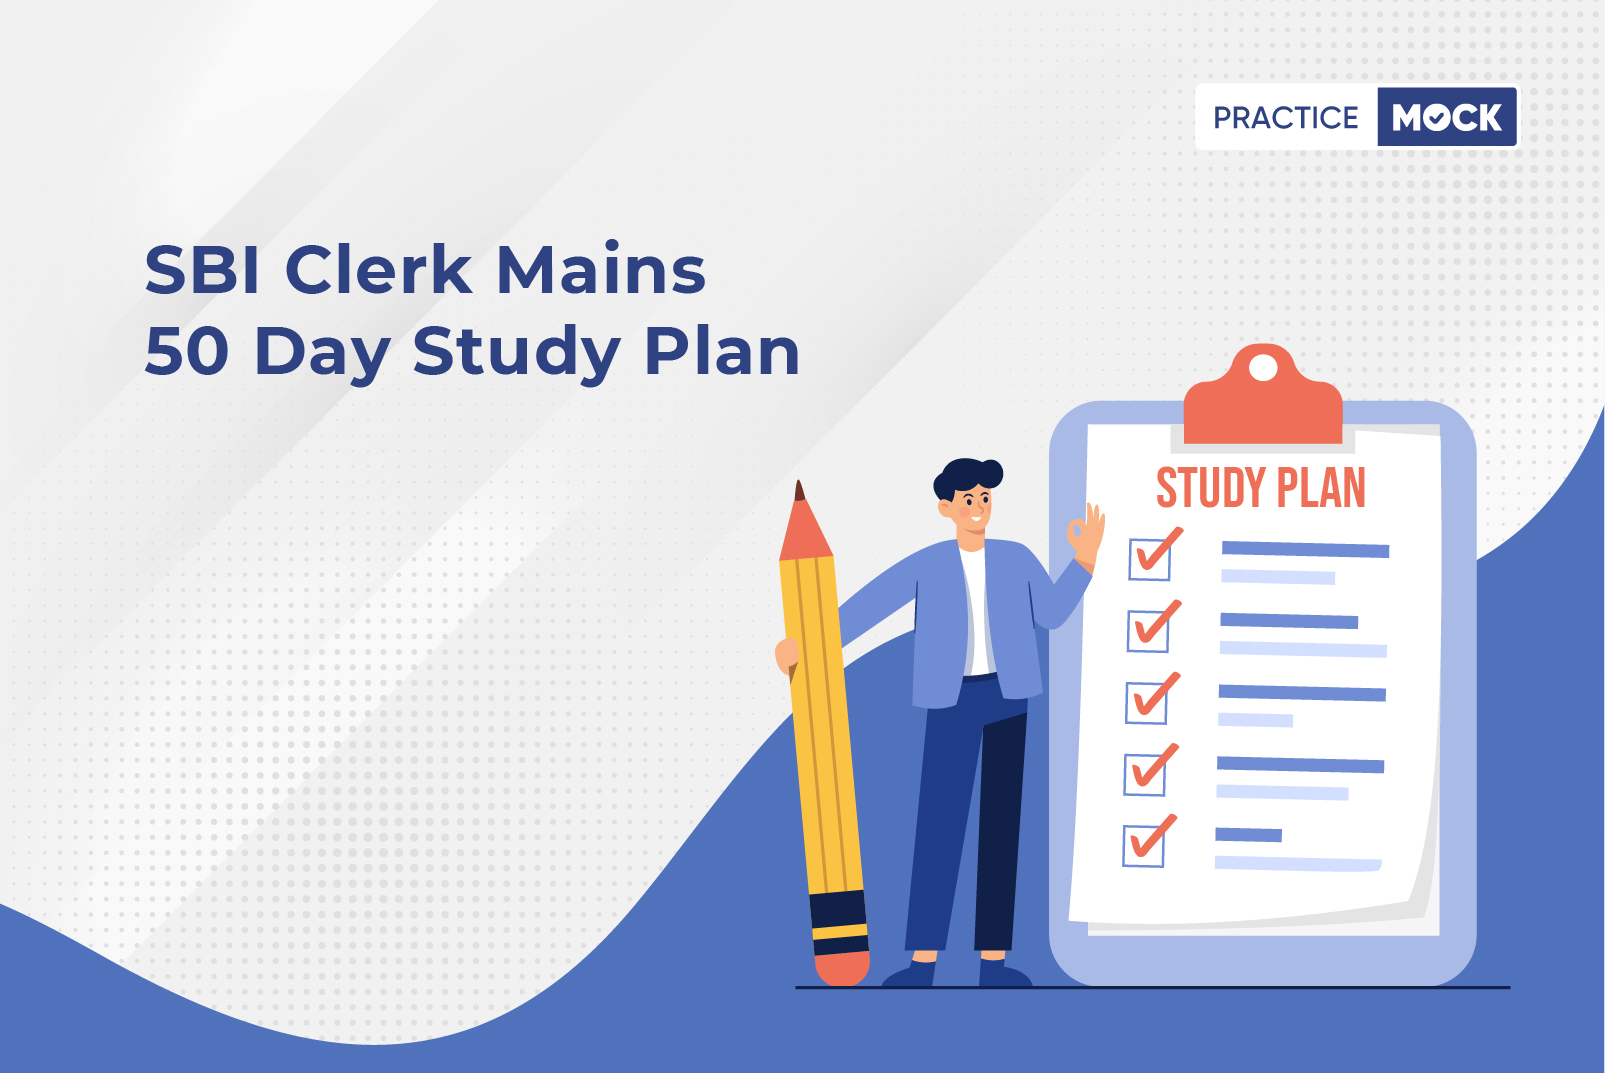 SBI Clerk Mains 50 Day Study Plan